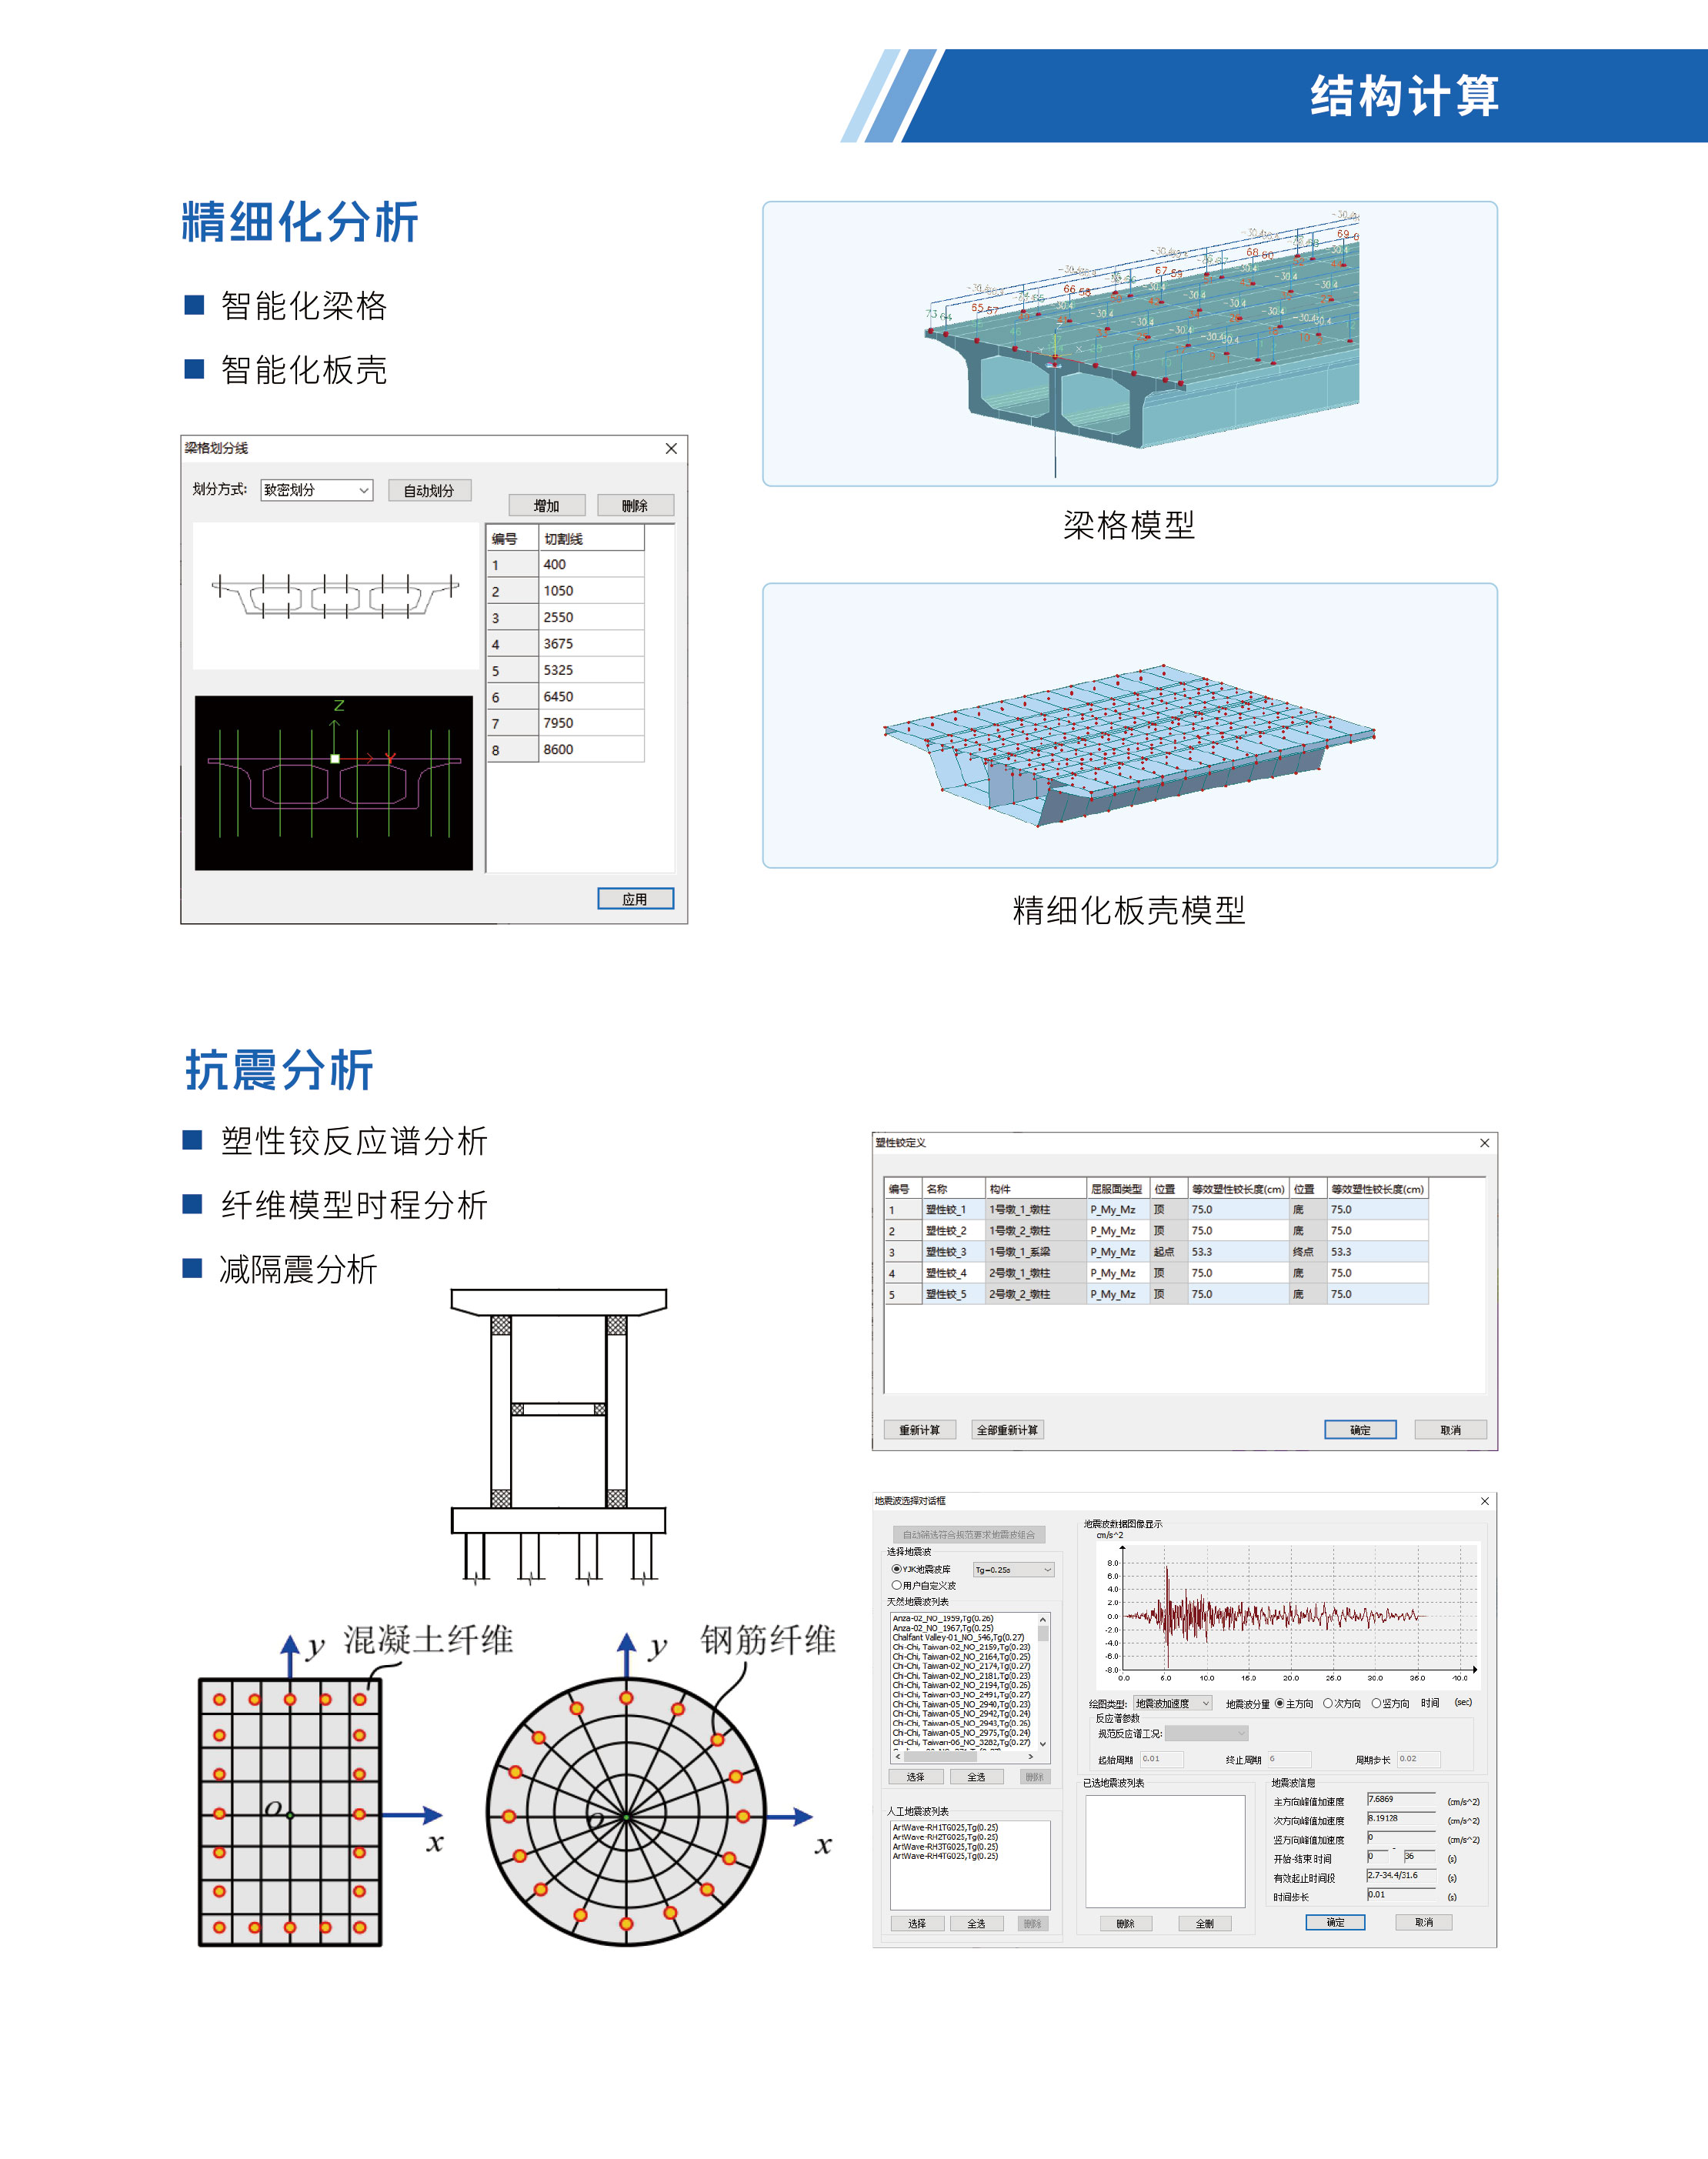 盈建科桥梁结构分析设计软件_11.jpg